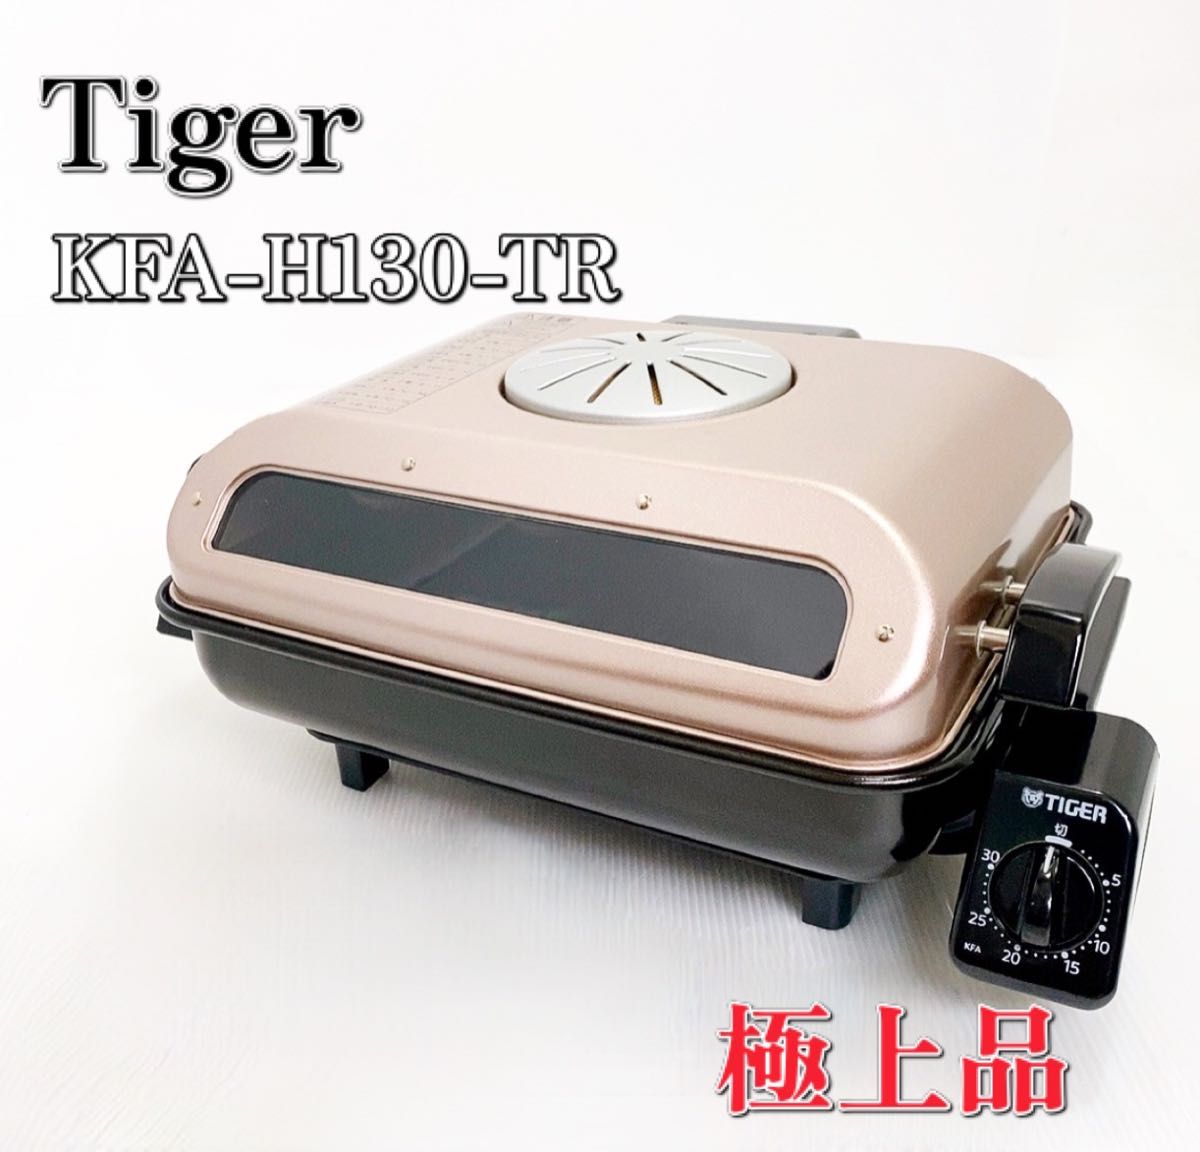 極上品】Tiger タイガー KFA-H130-TR フィッシュロースター 両面魚焼き